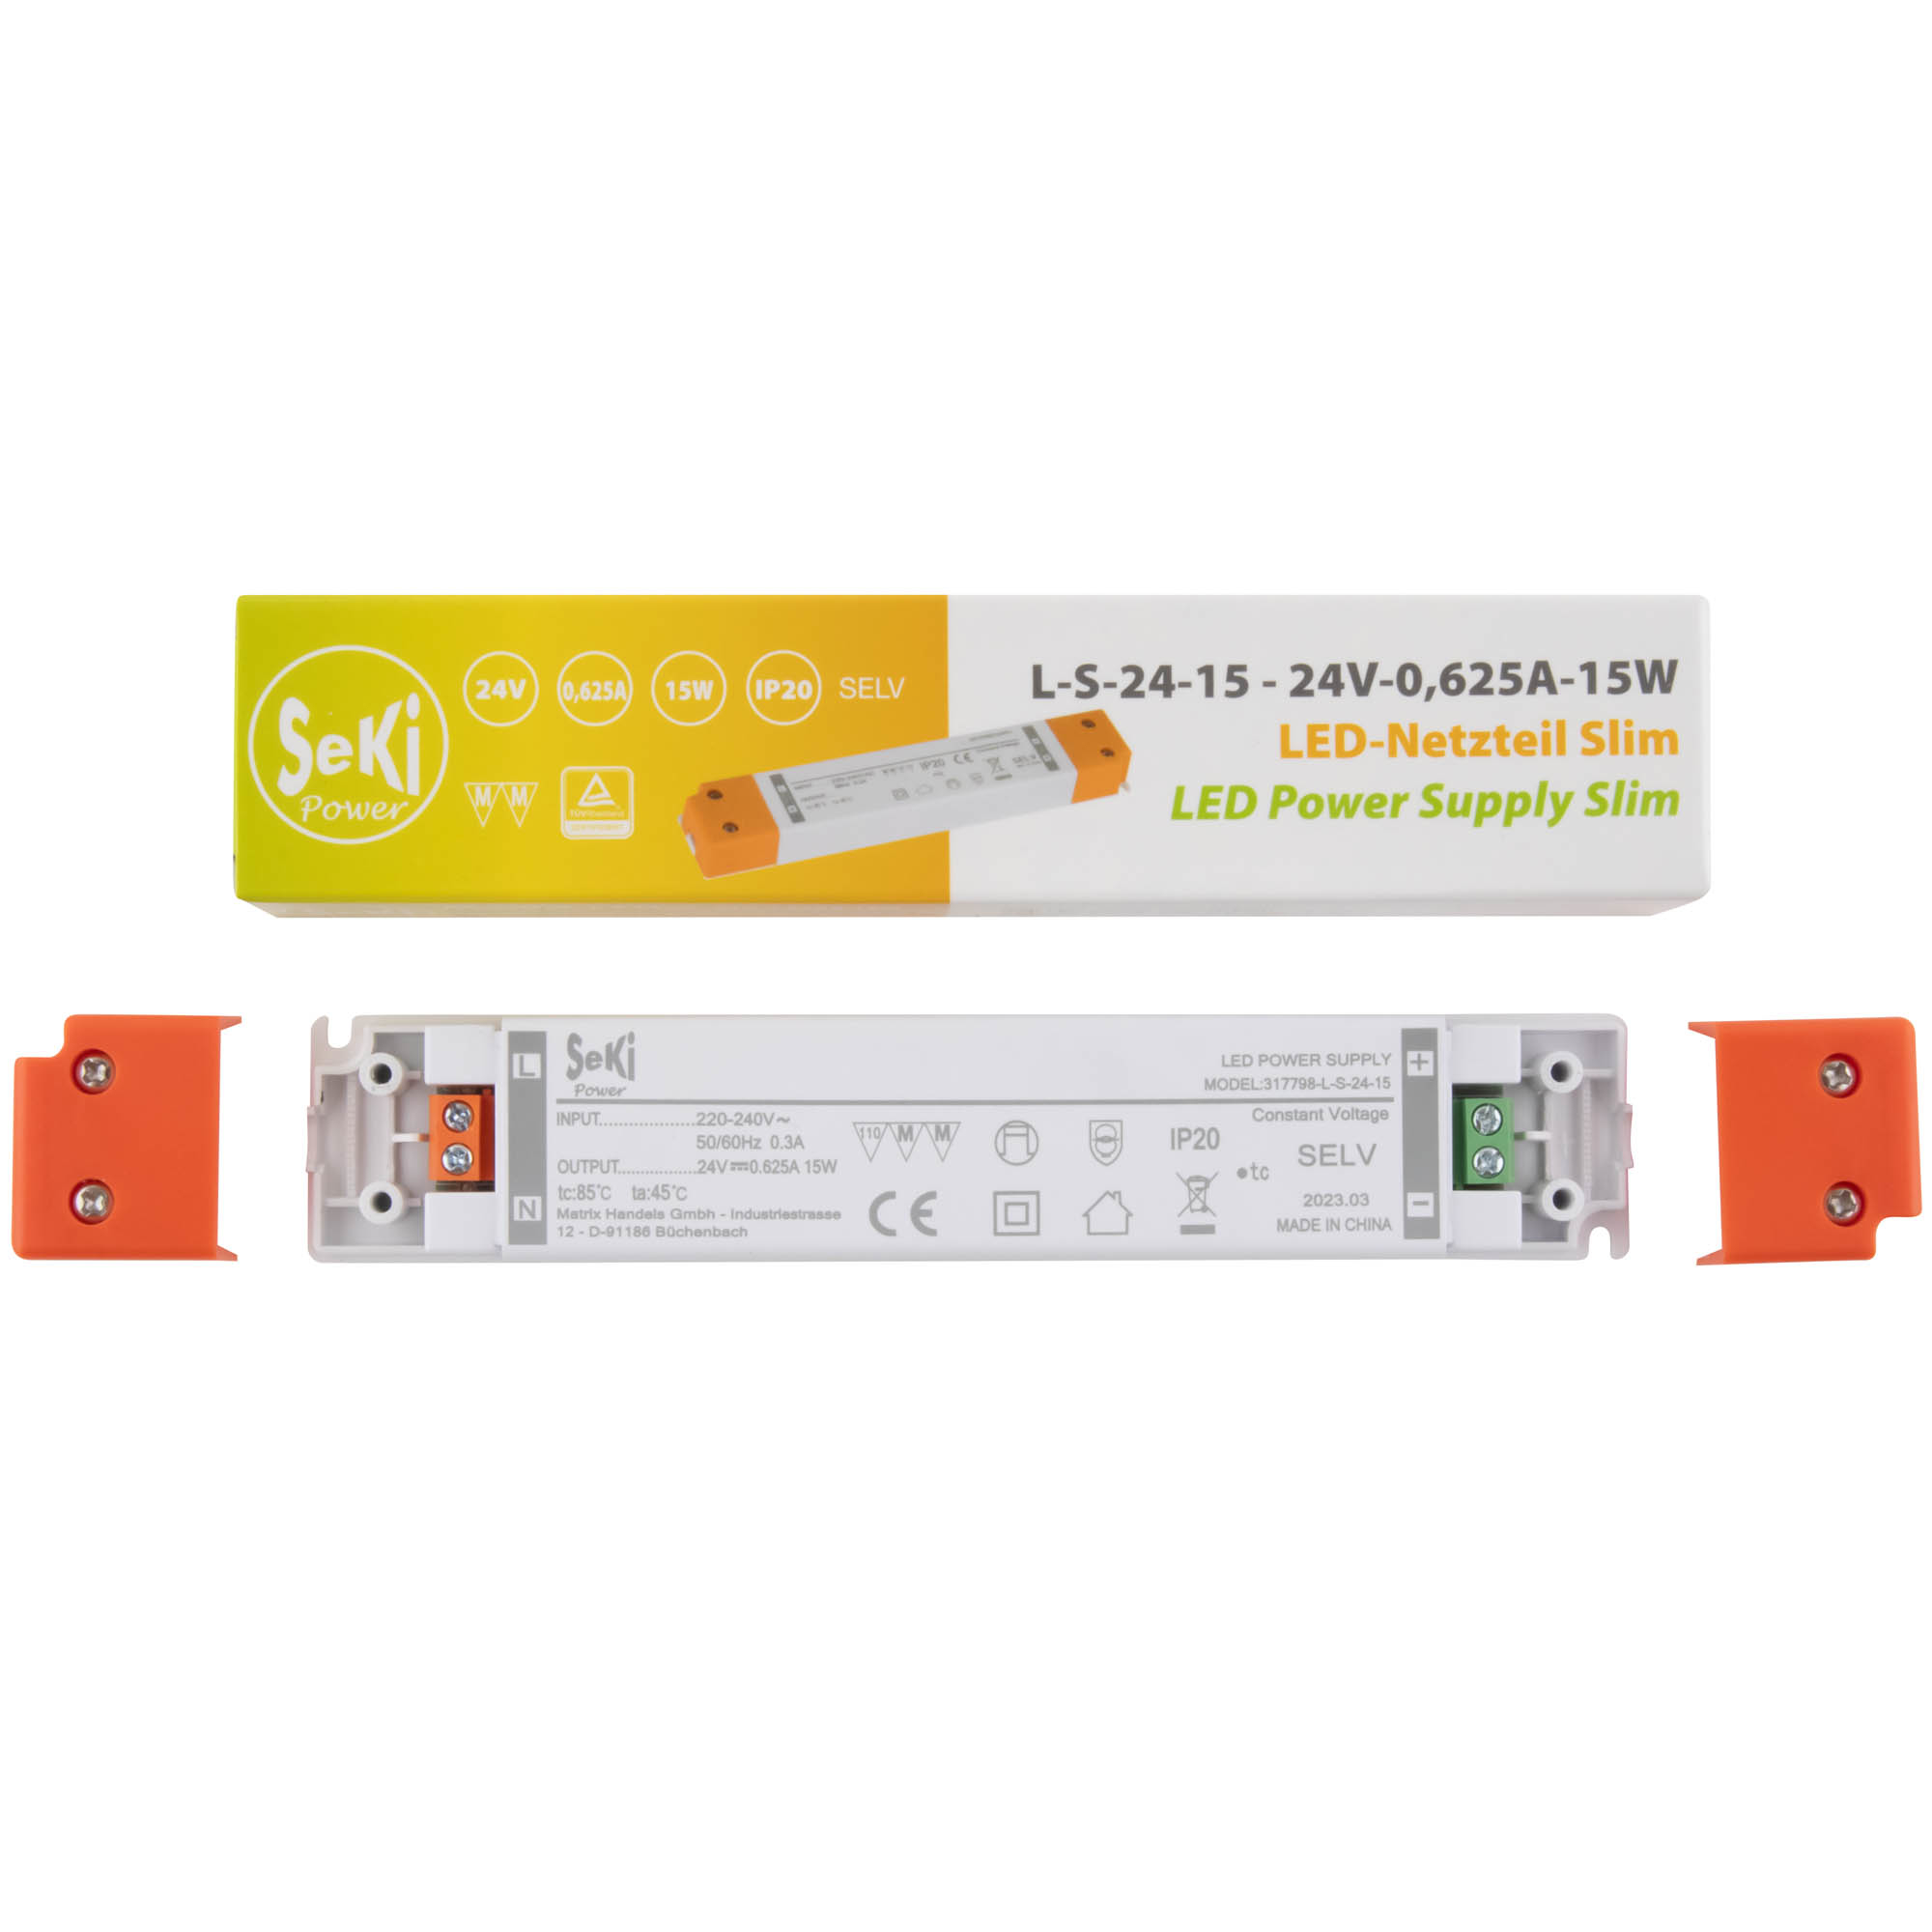 LED-Netzteil Slim L-S-24-15 - 24V - 0,625A - 15W